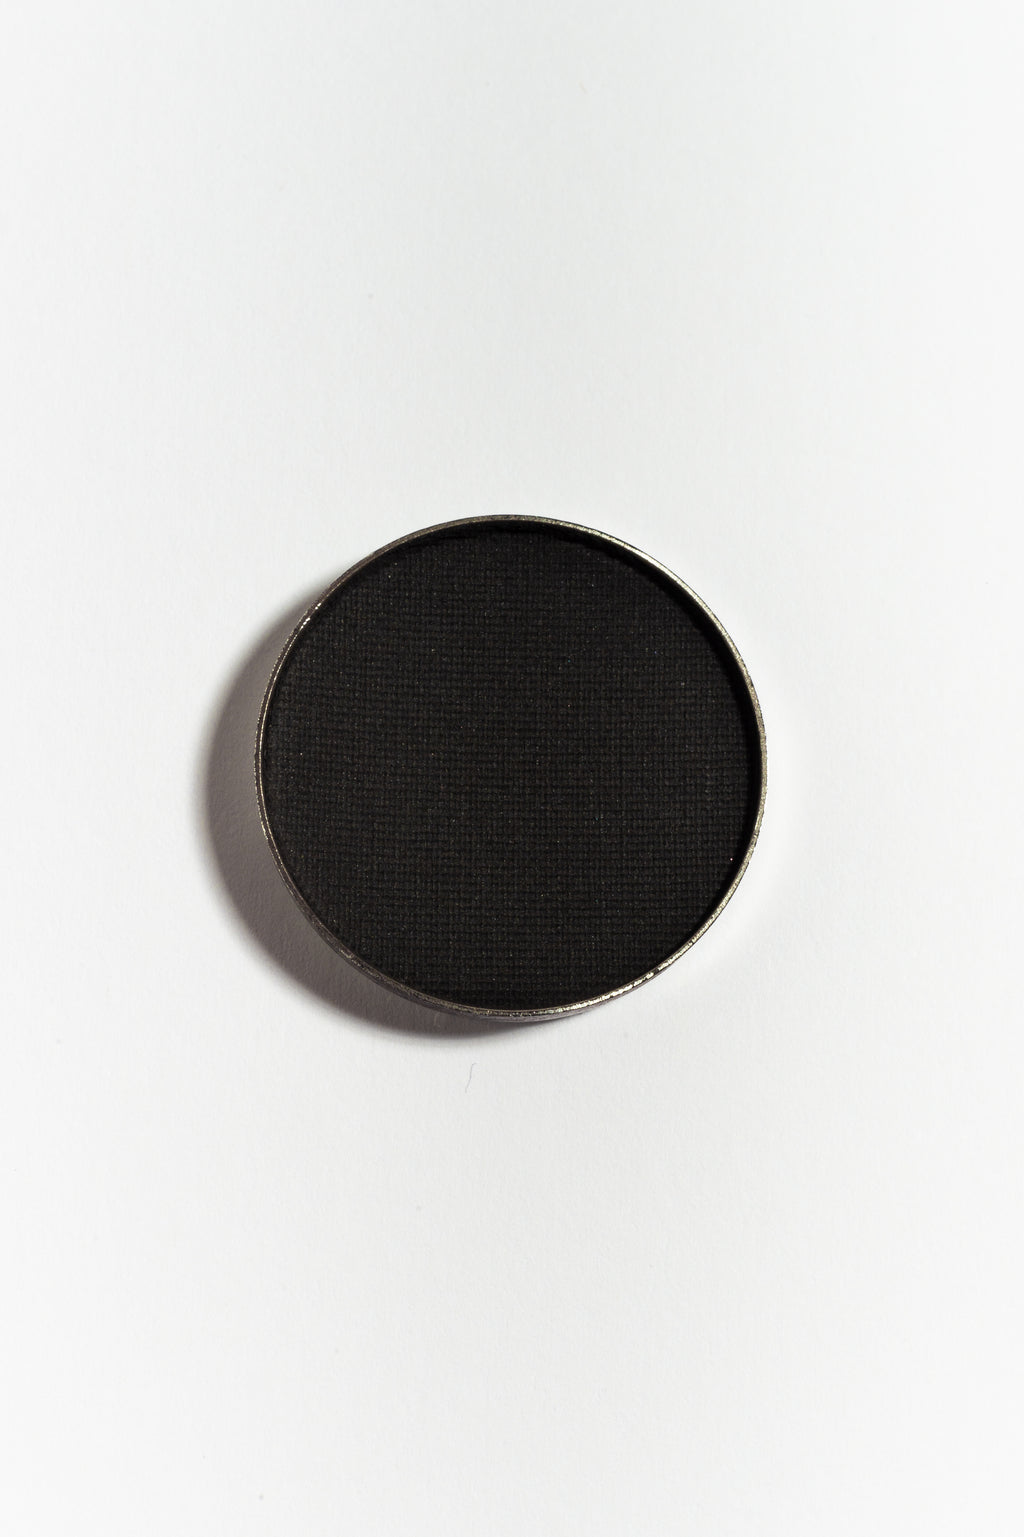 Eye shadow pan in Blackest Black